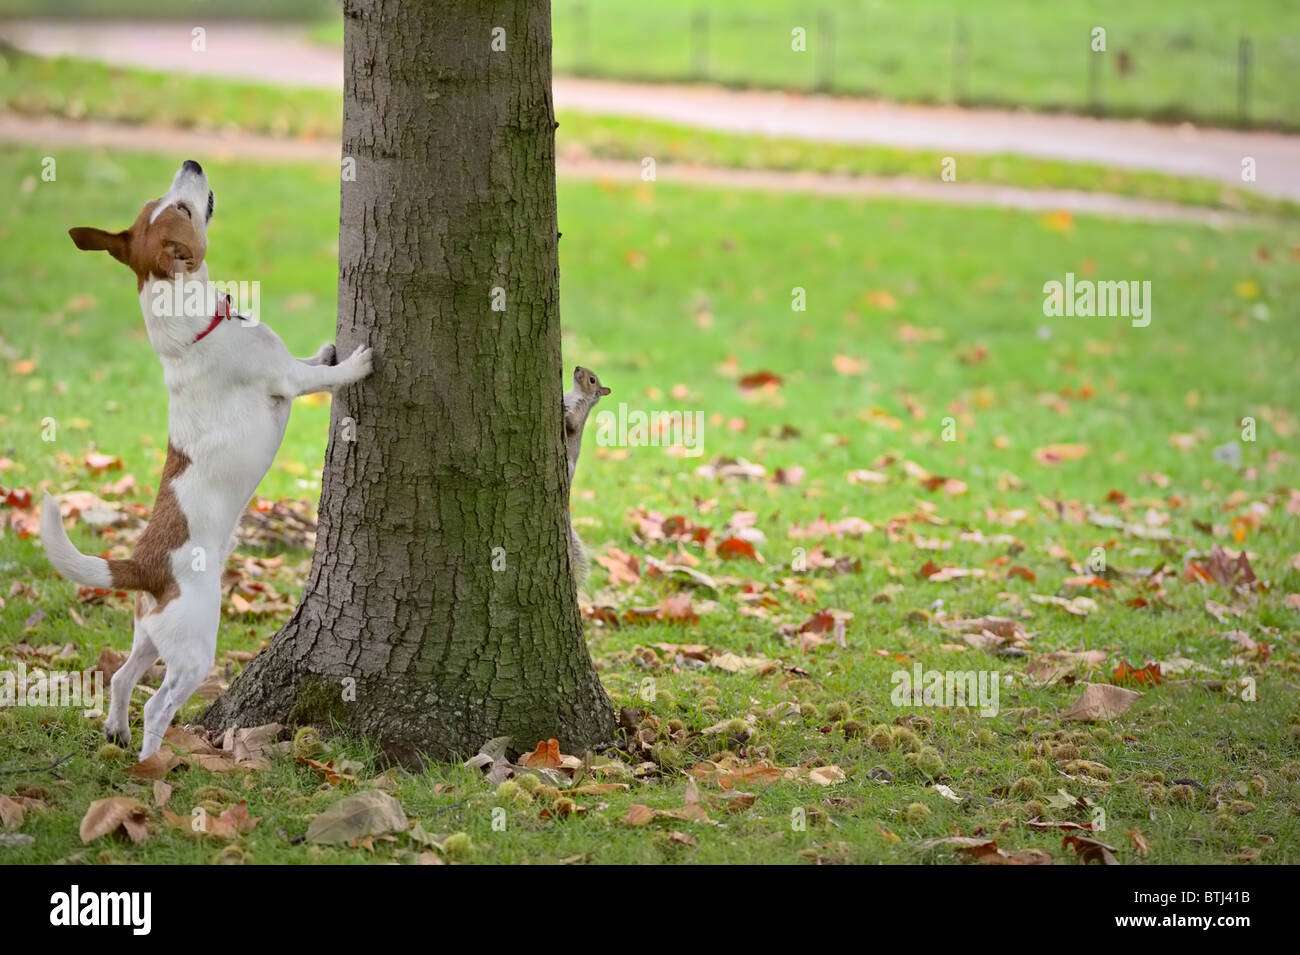 Parson Jack Russell Terrier pourchassant un écureuil gris dans un arbre. Mais l'écureuil se cache de l'autre côté ! Banque D'Images